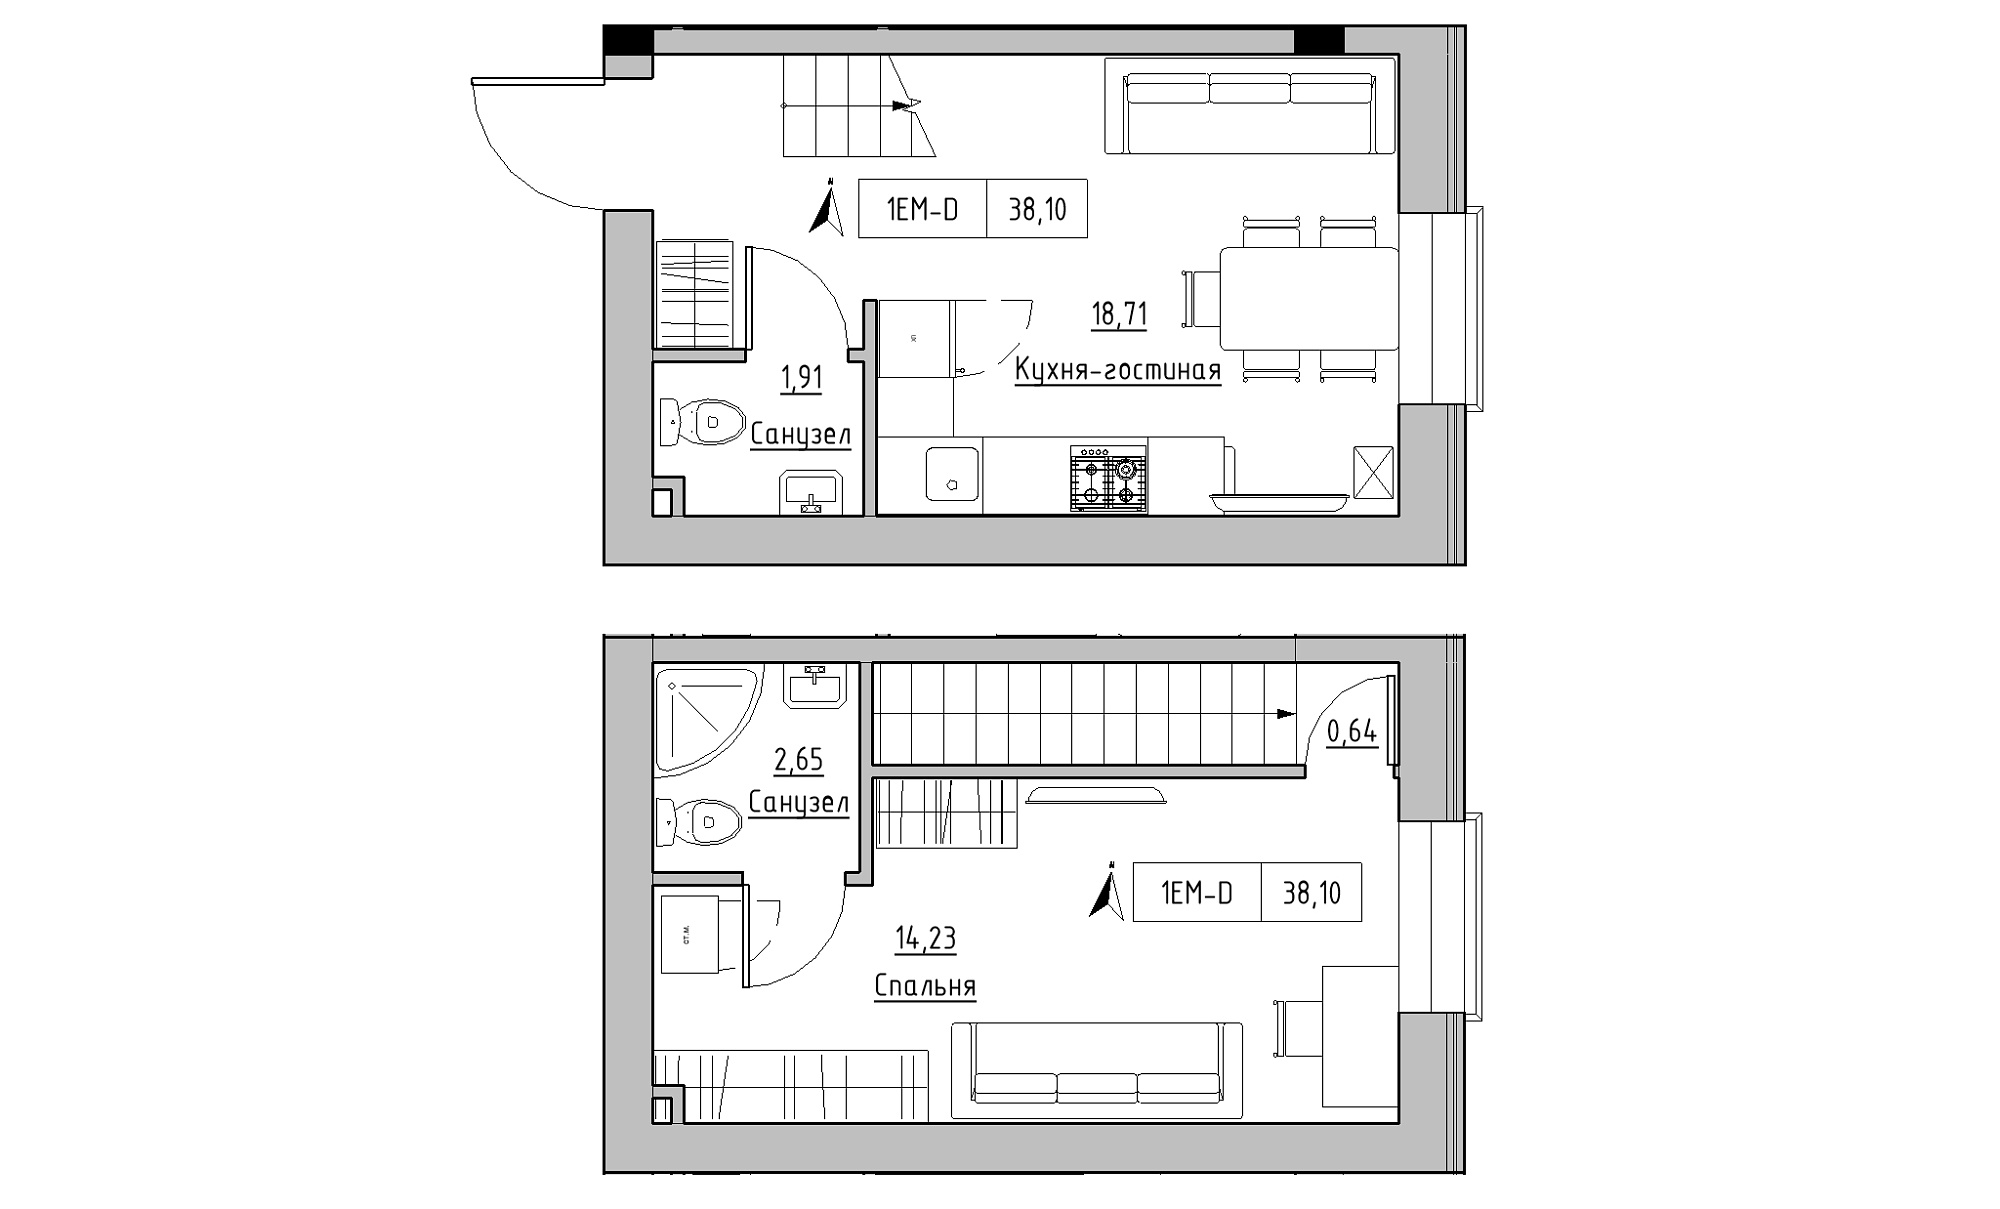 Planning 2-lvl flats area 38.1m2, KS-023-01/0007.